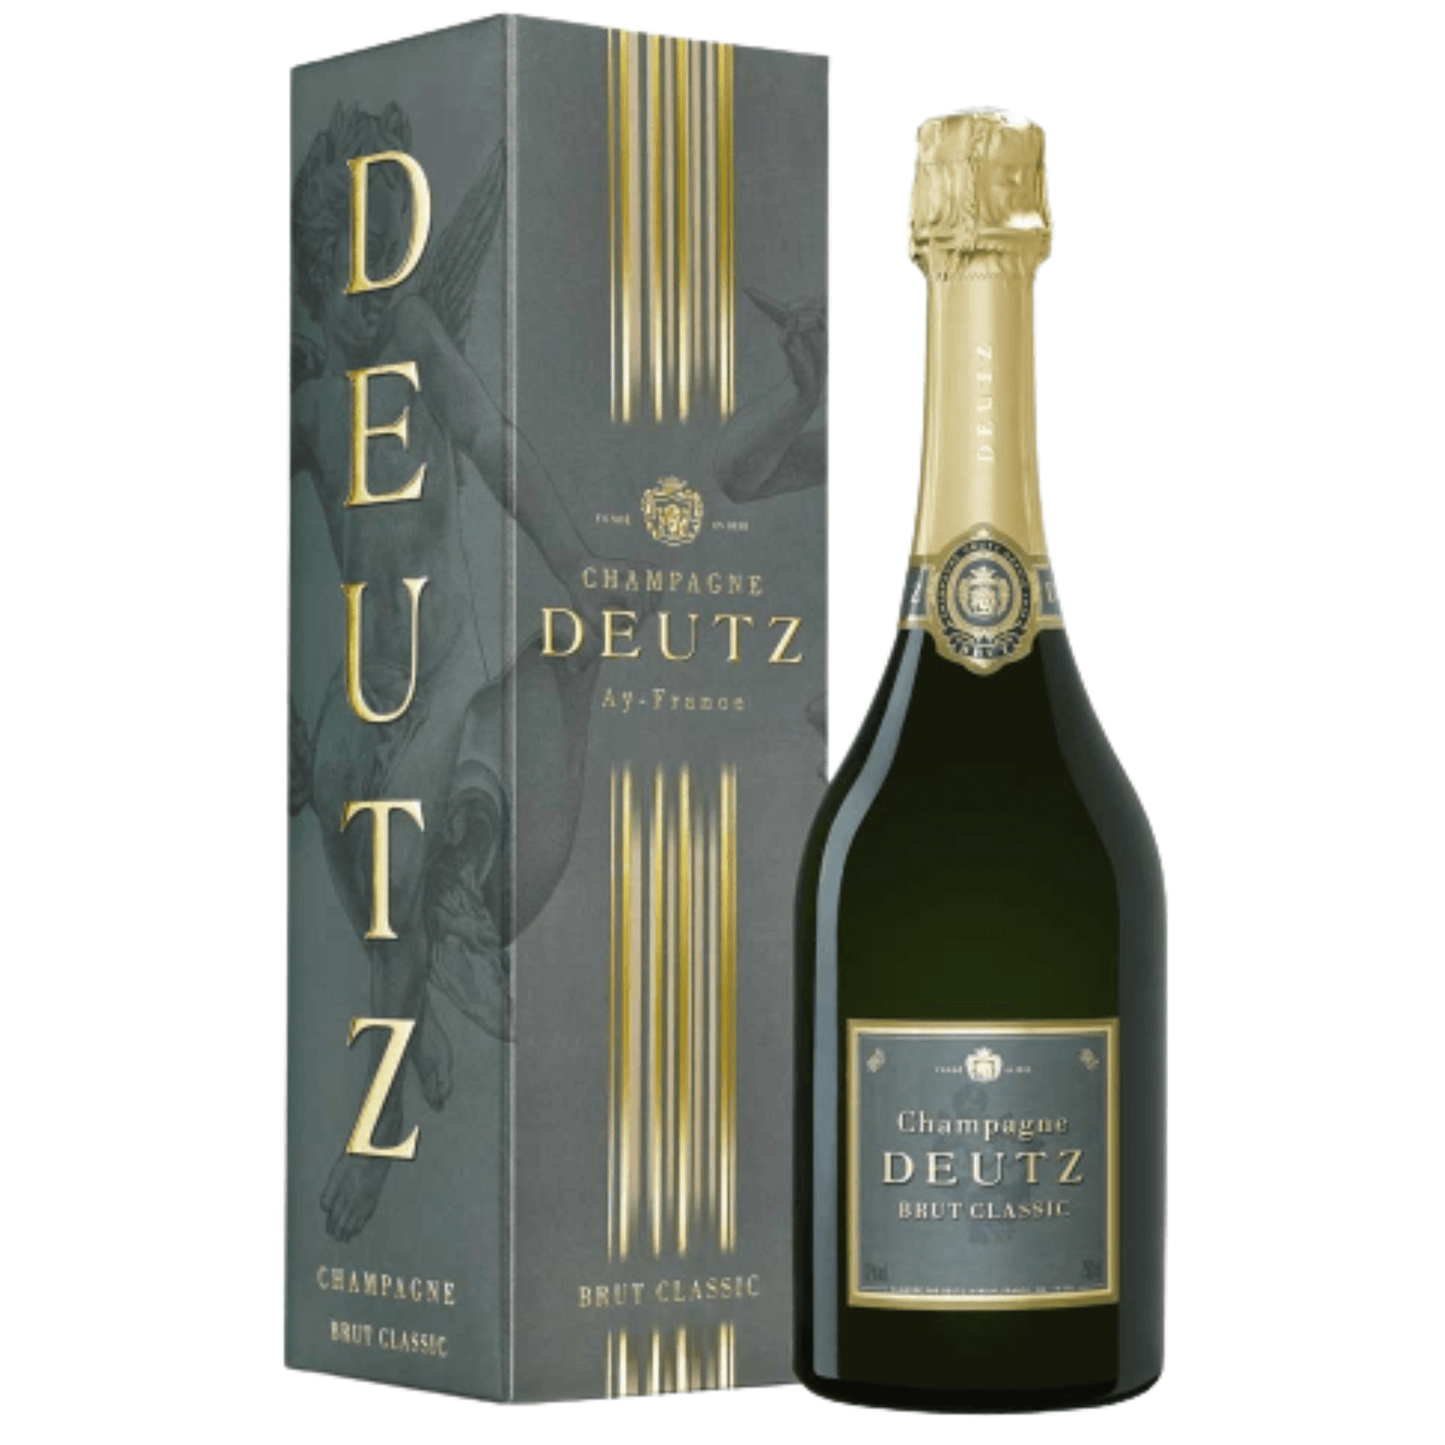 Bottiglia di Champagne Deutz Brut Classic da 0,75 l con astuccio.